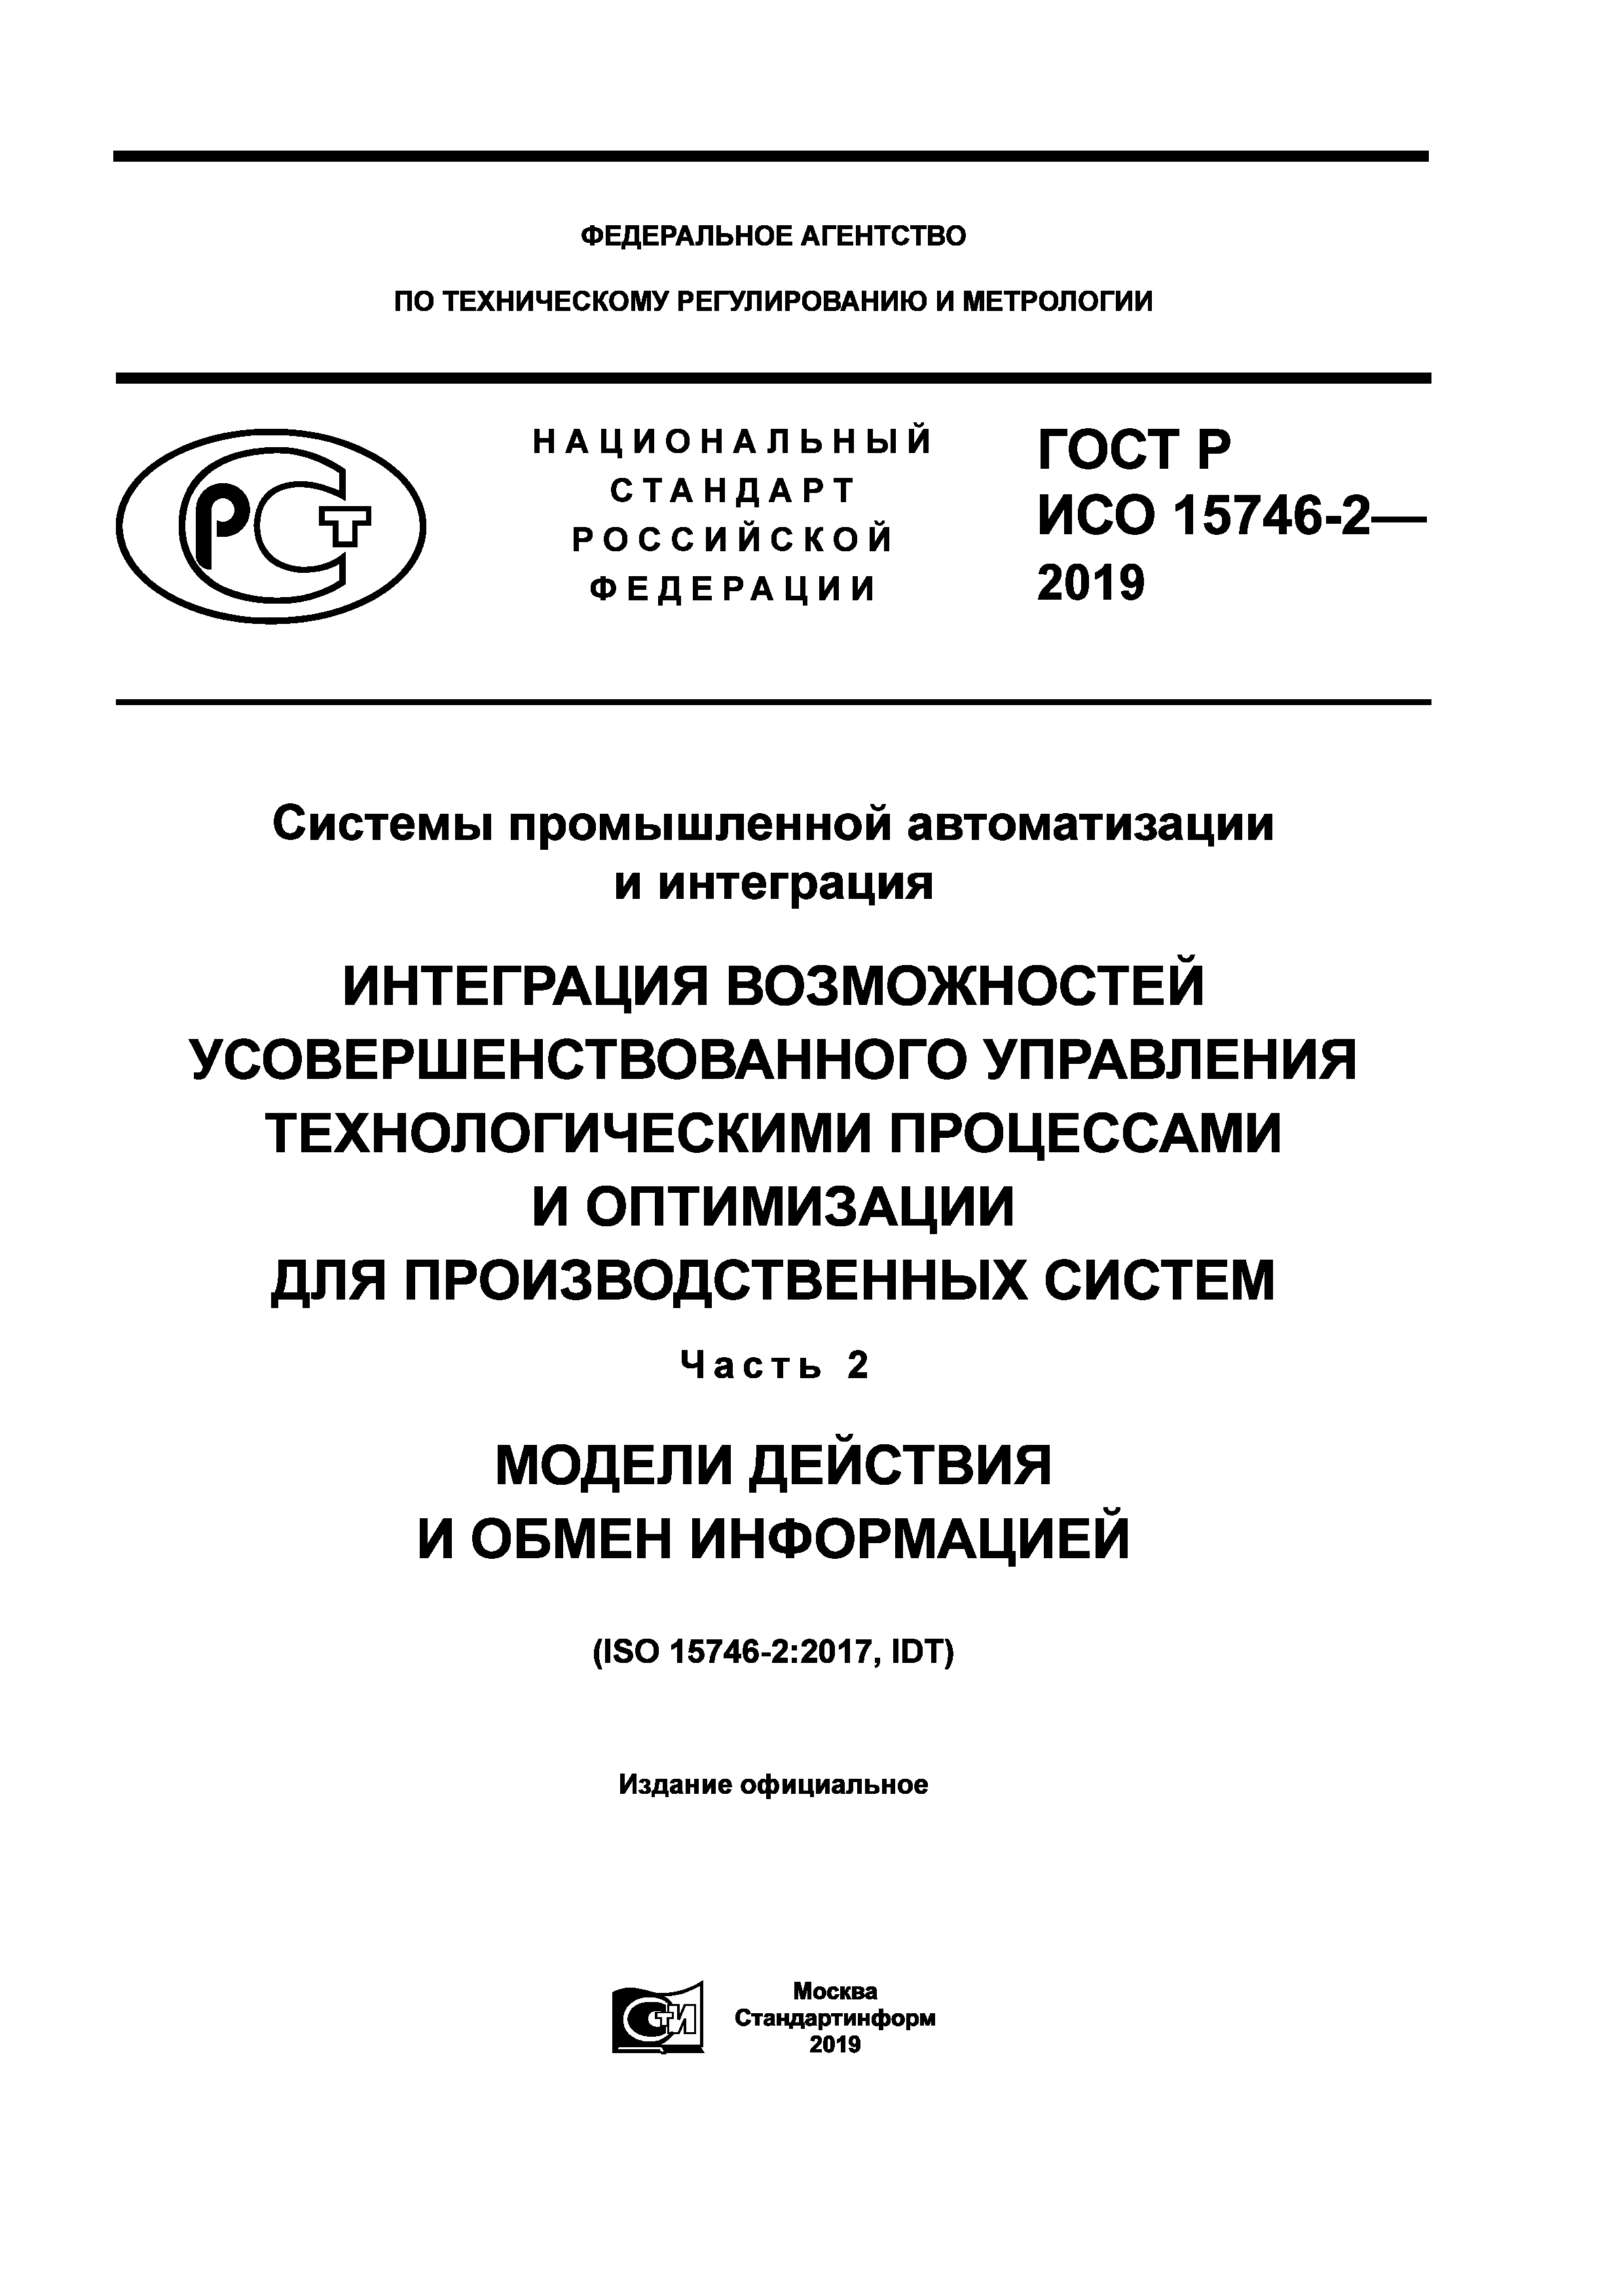 ГОСТ Р ИСО 15746-2-2019